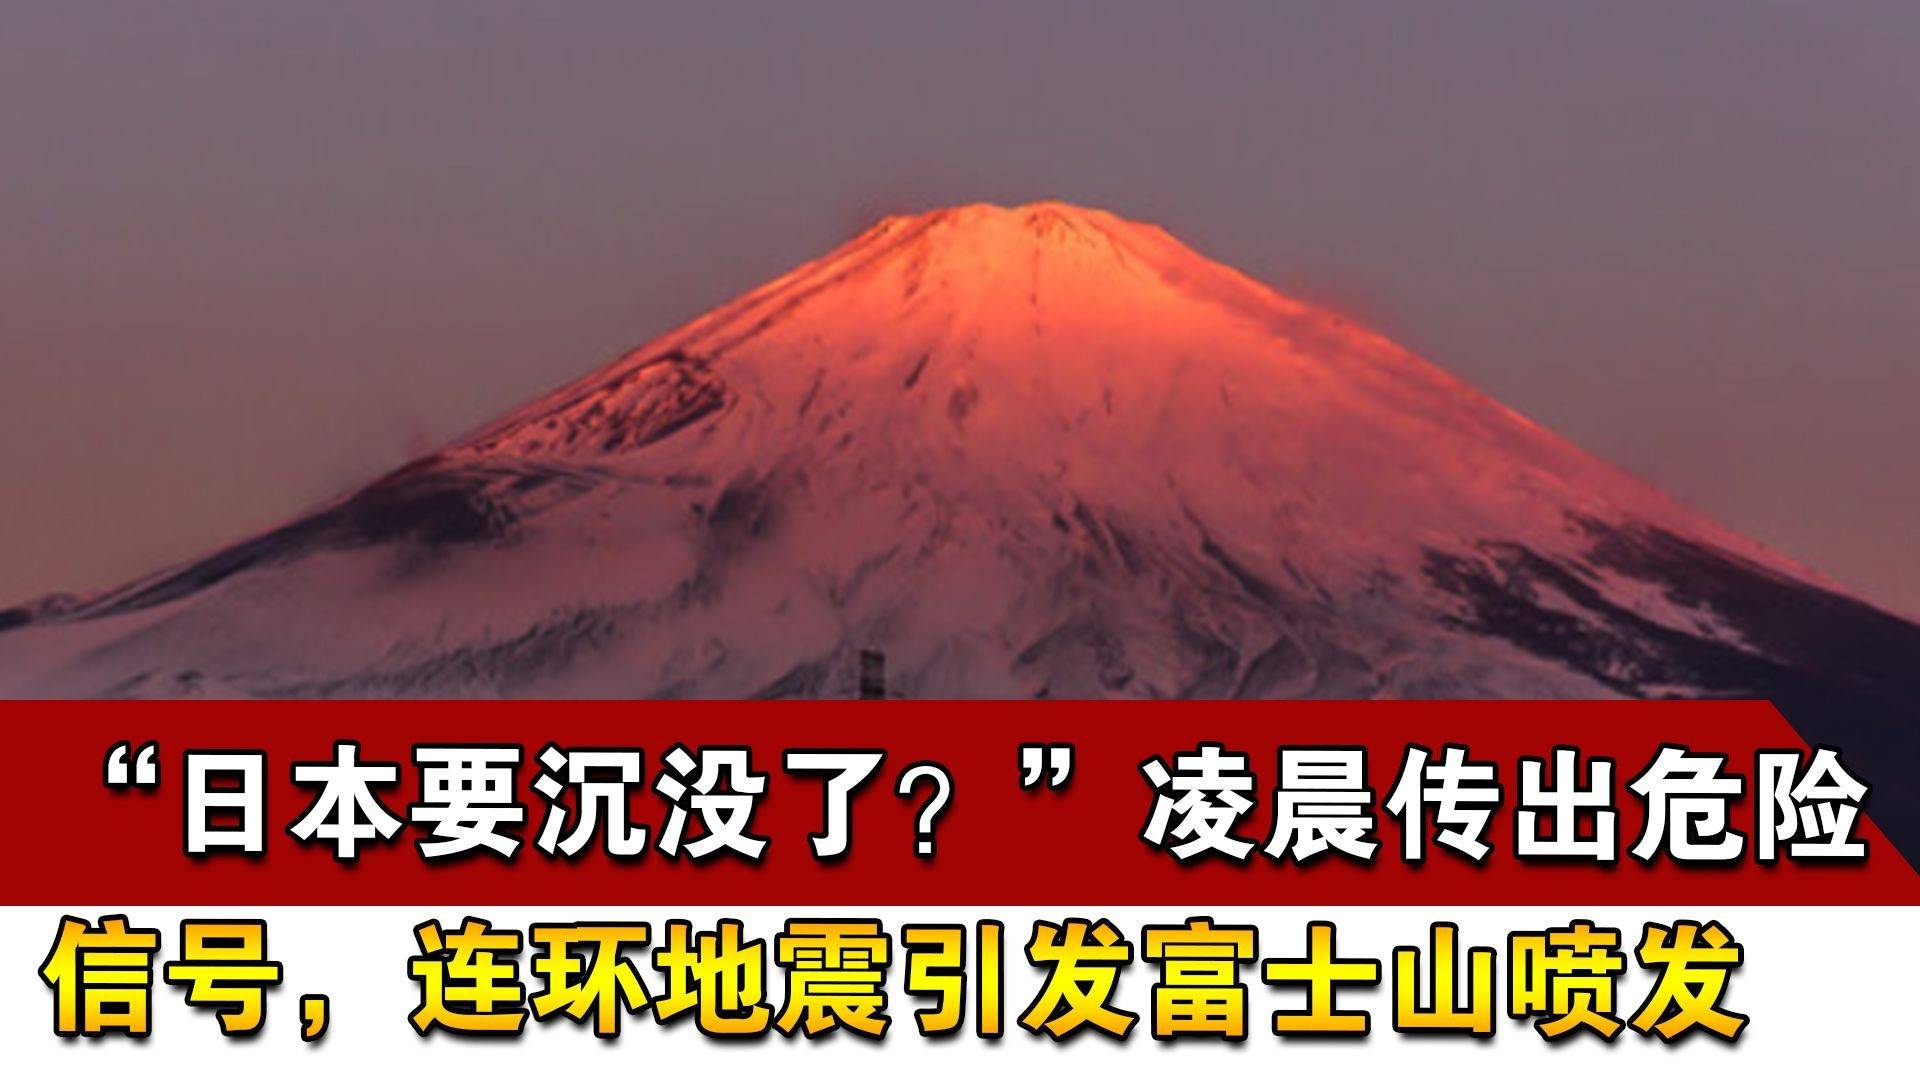 富士山爆发若达5级东京会受影响 专家:会形成很强的火山泥石流